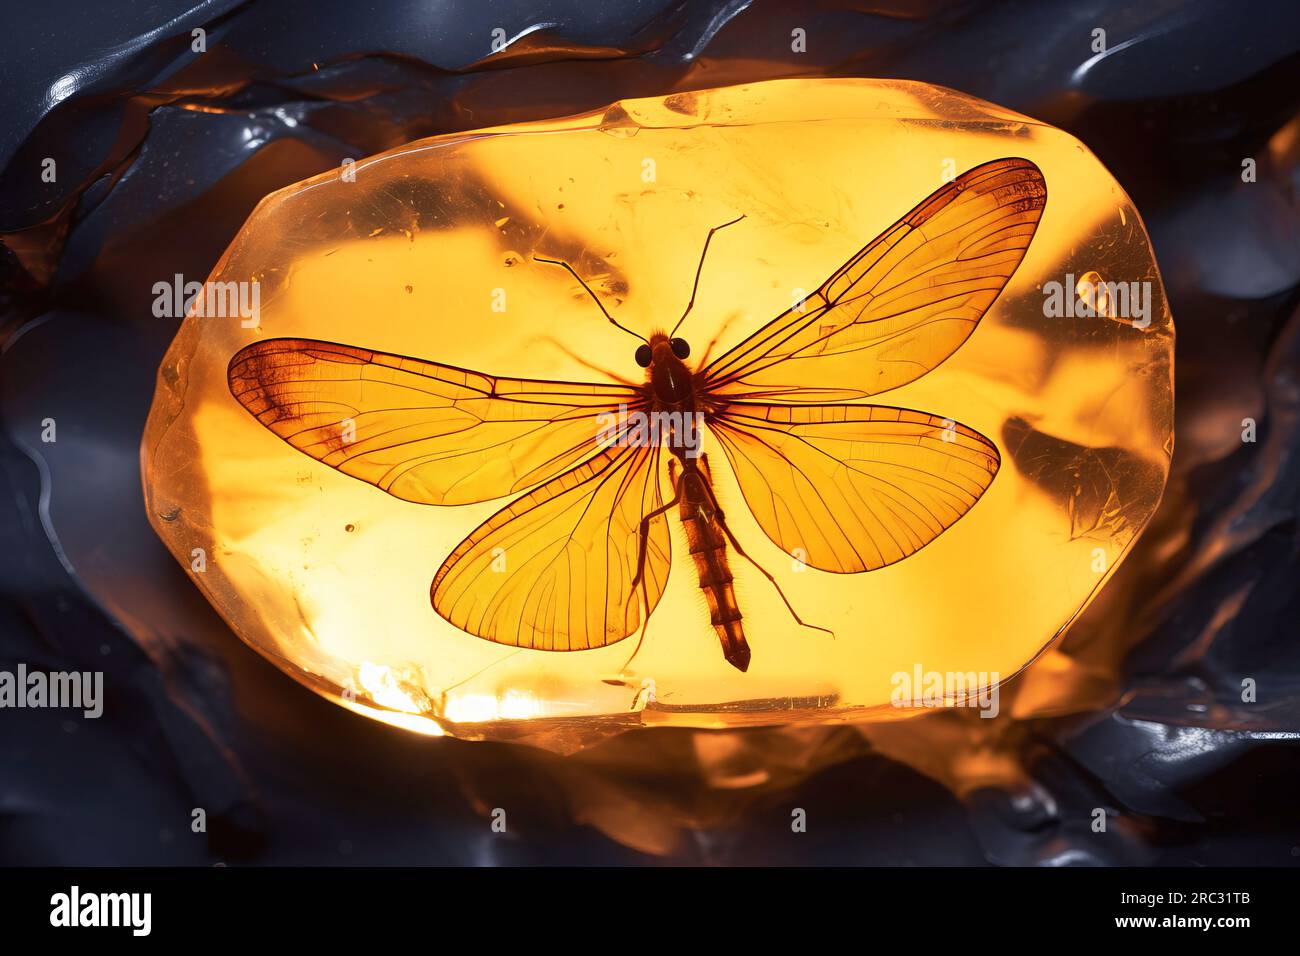 Ambra baltica con insetti intrappolati. Animale conservato in un pezzo di ambra. Fotografia macro di pietre preziose. Resina fossilizzata per alberi. Bellezza naturale Foto Stock